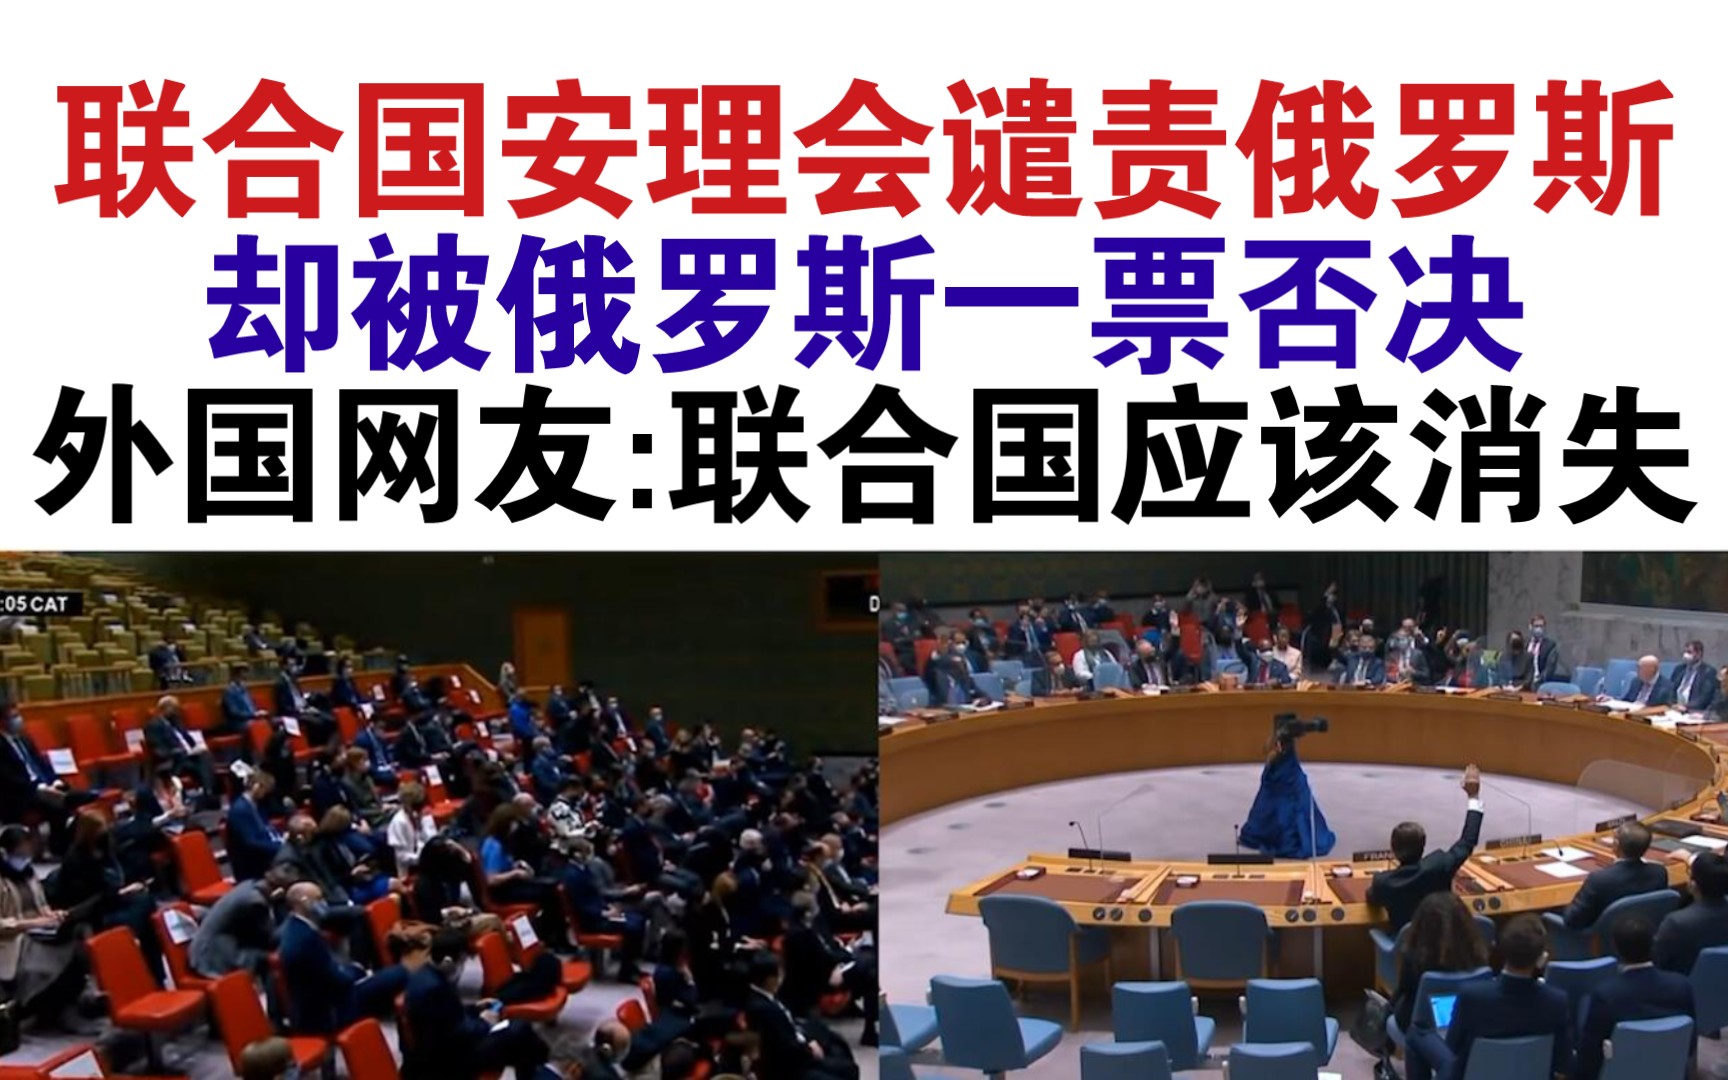 联合国大会通过决议 谴责缅甸军方使用武力 呼吁实施武器禁运 | | 1联合国新闻